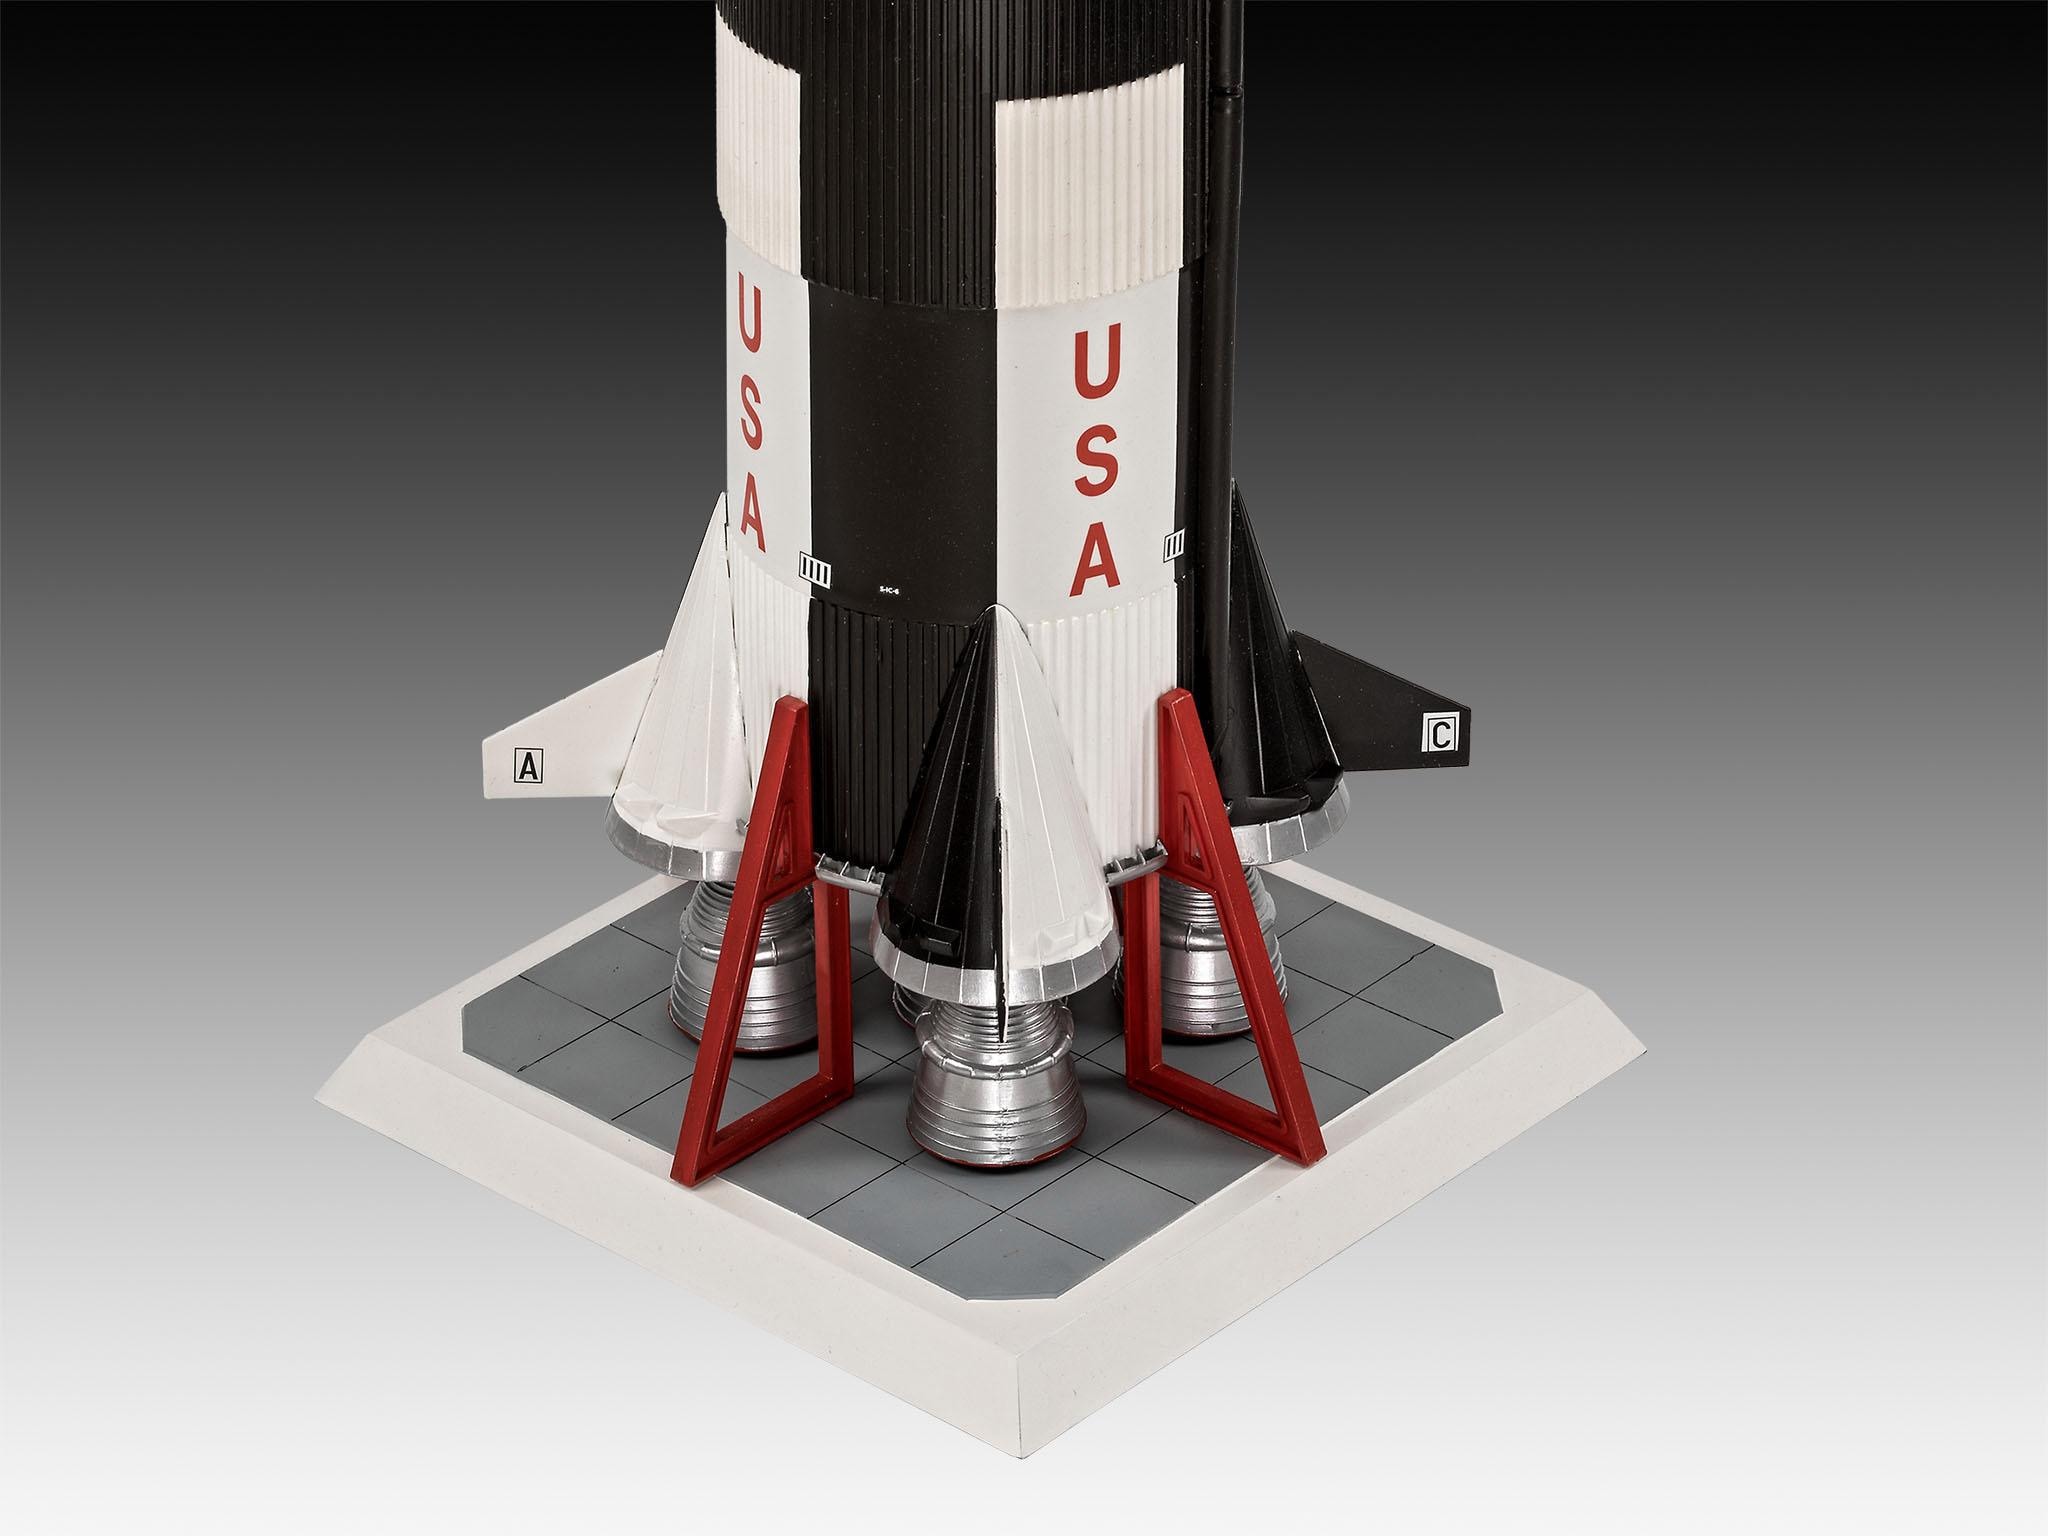 Revell® Modellbausatz »Apollo 11 Saturn V Rocket«, 1:96, Jubiläumsset mit Basis-Zubehör; Made in Europe